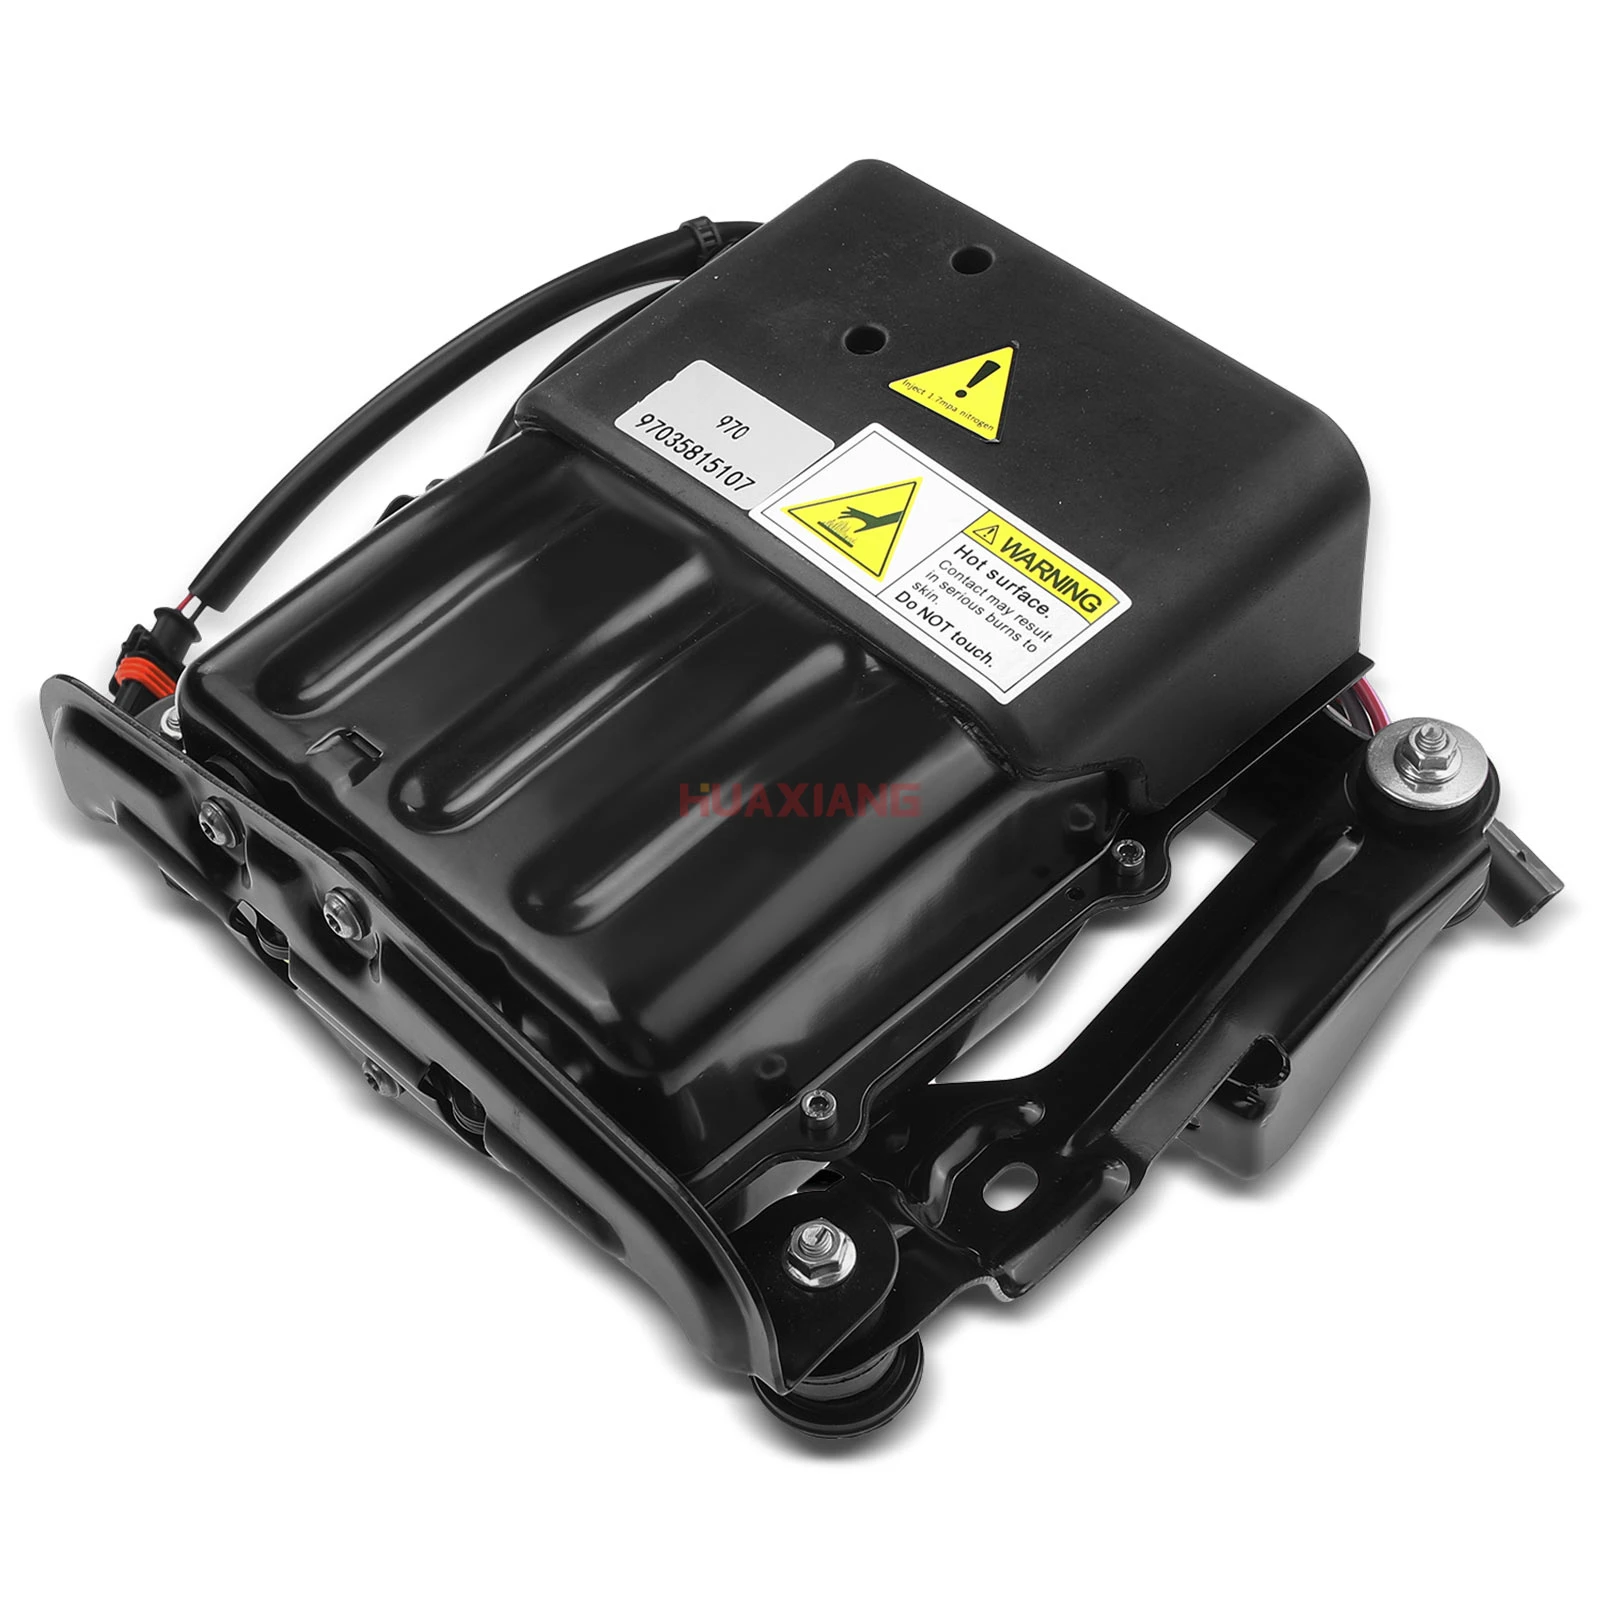 

DE/GM Air Suspension Compressor Pump Assembly Relay for Porsche Panamera 2010-2016